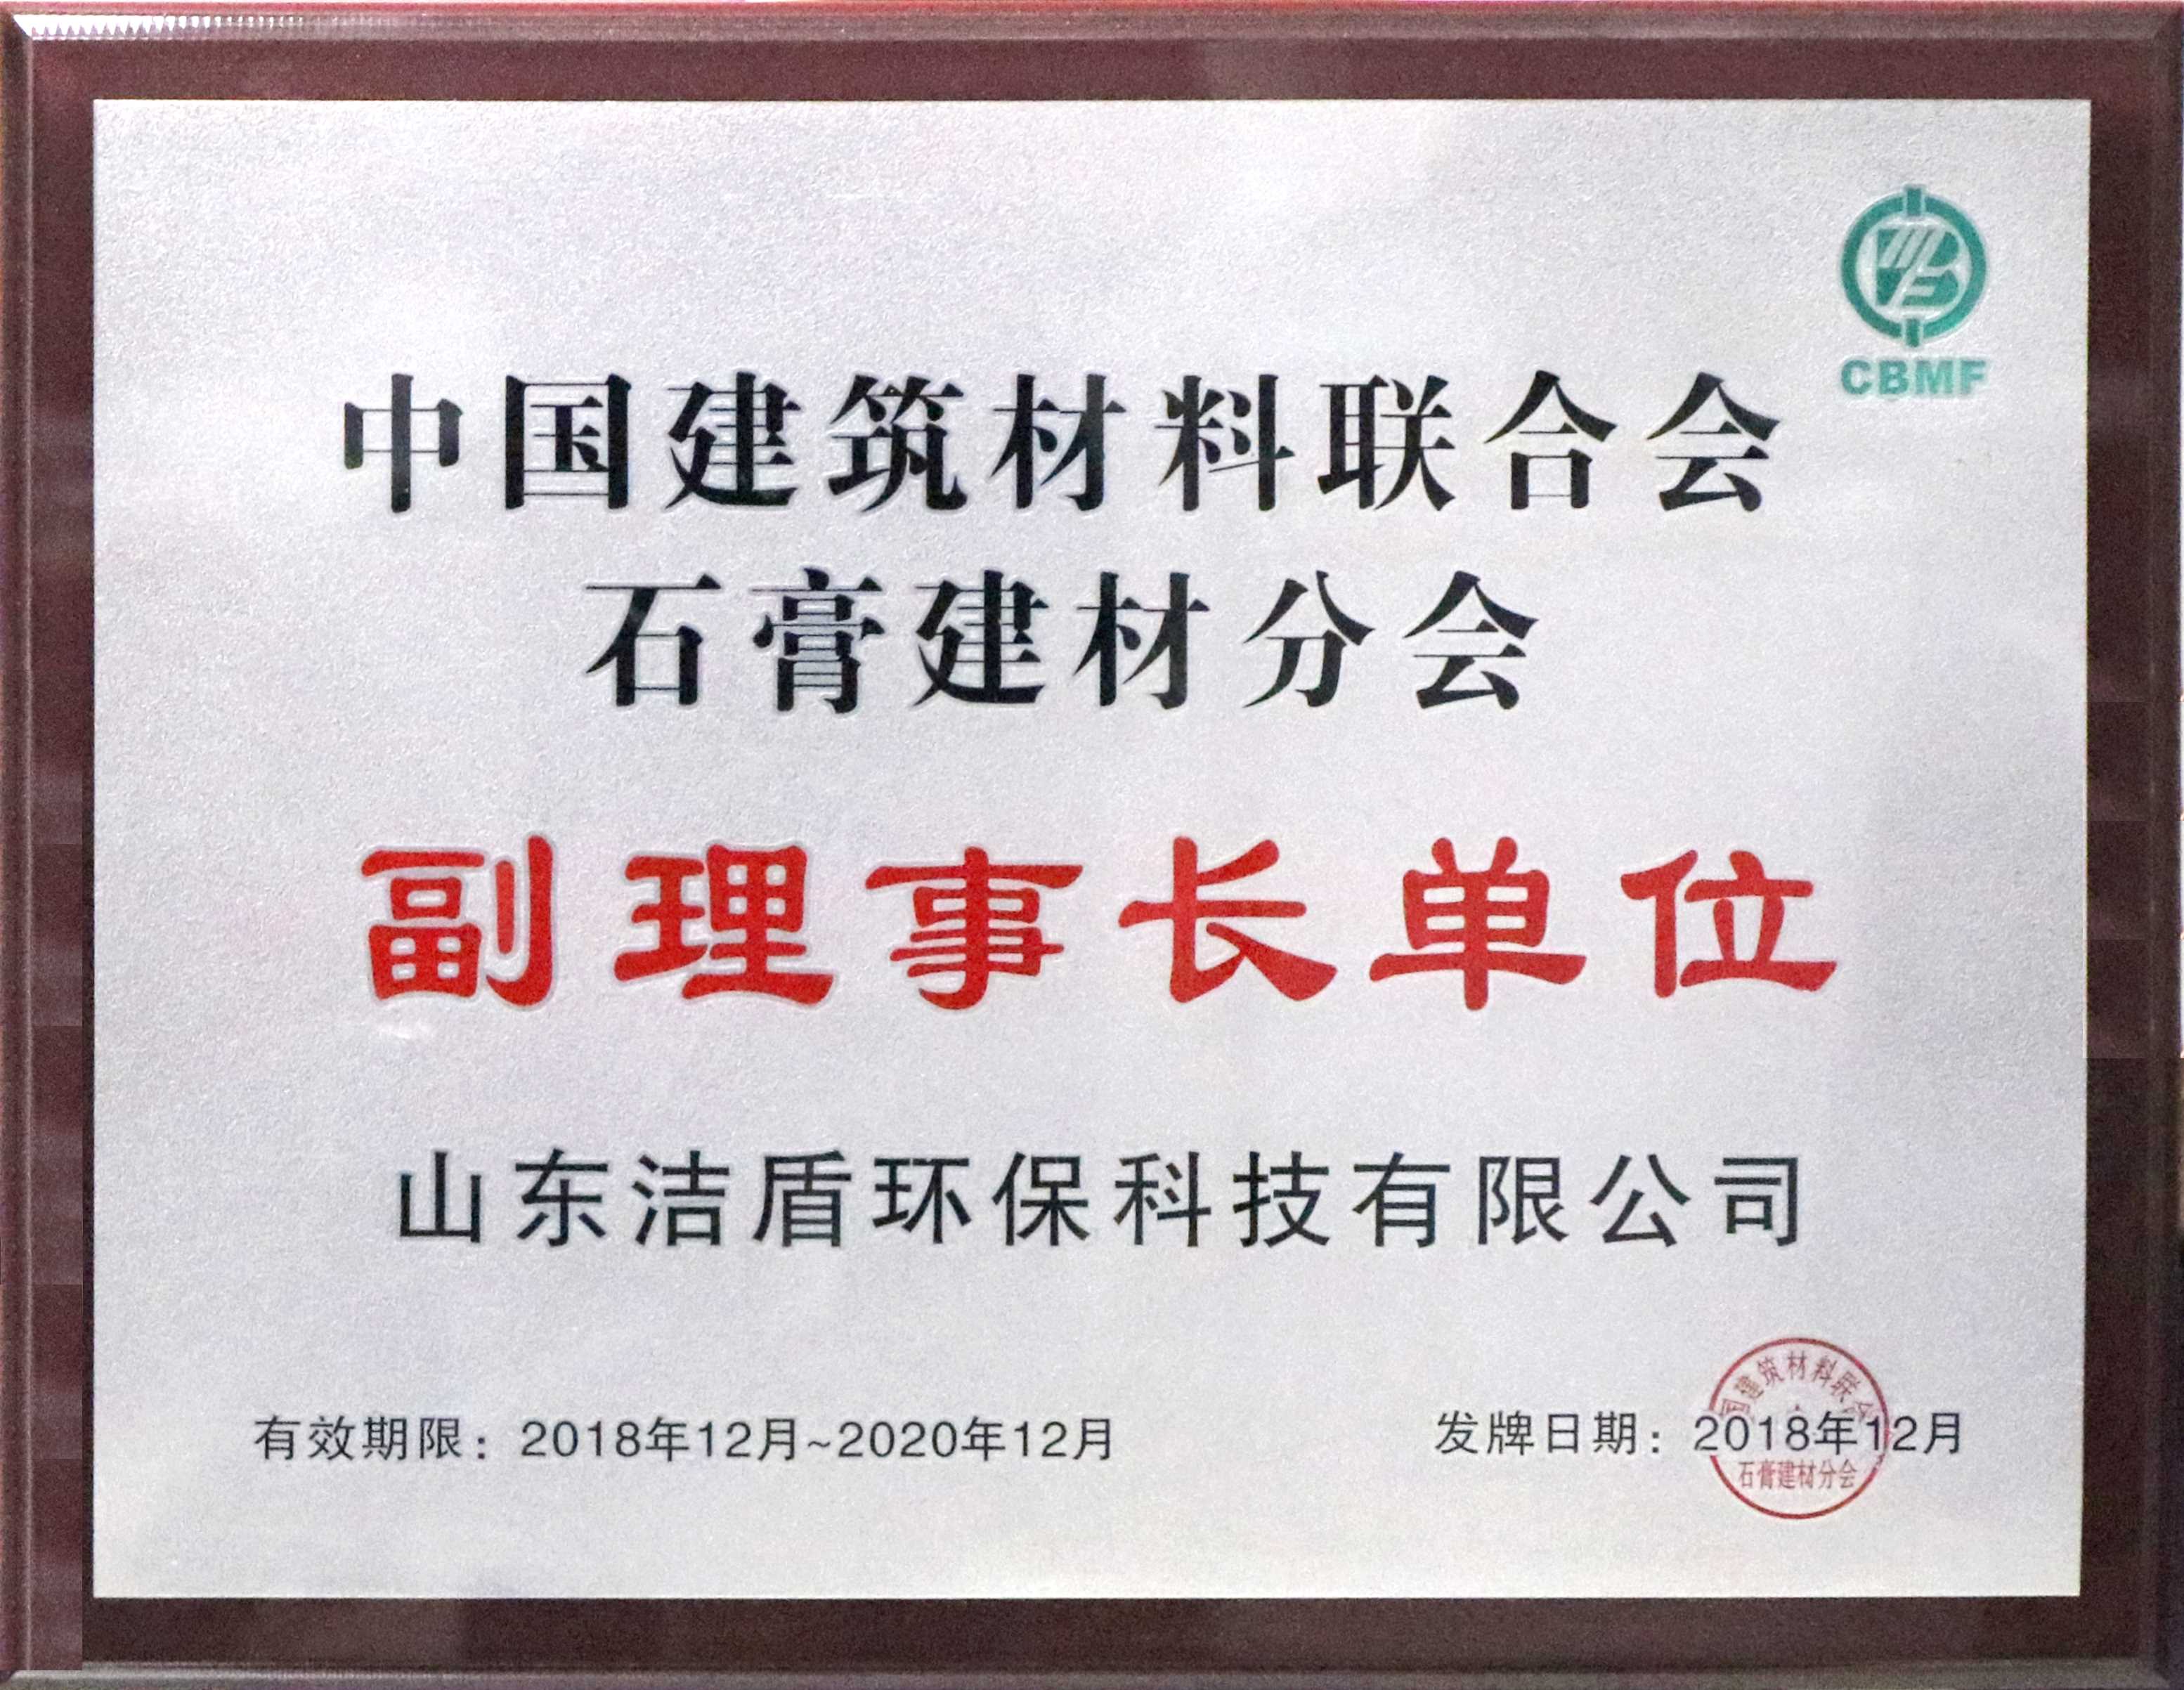 2019-01-24中国建筑材料联合会石膏建材分会副理事长单位